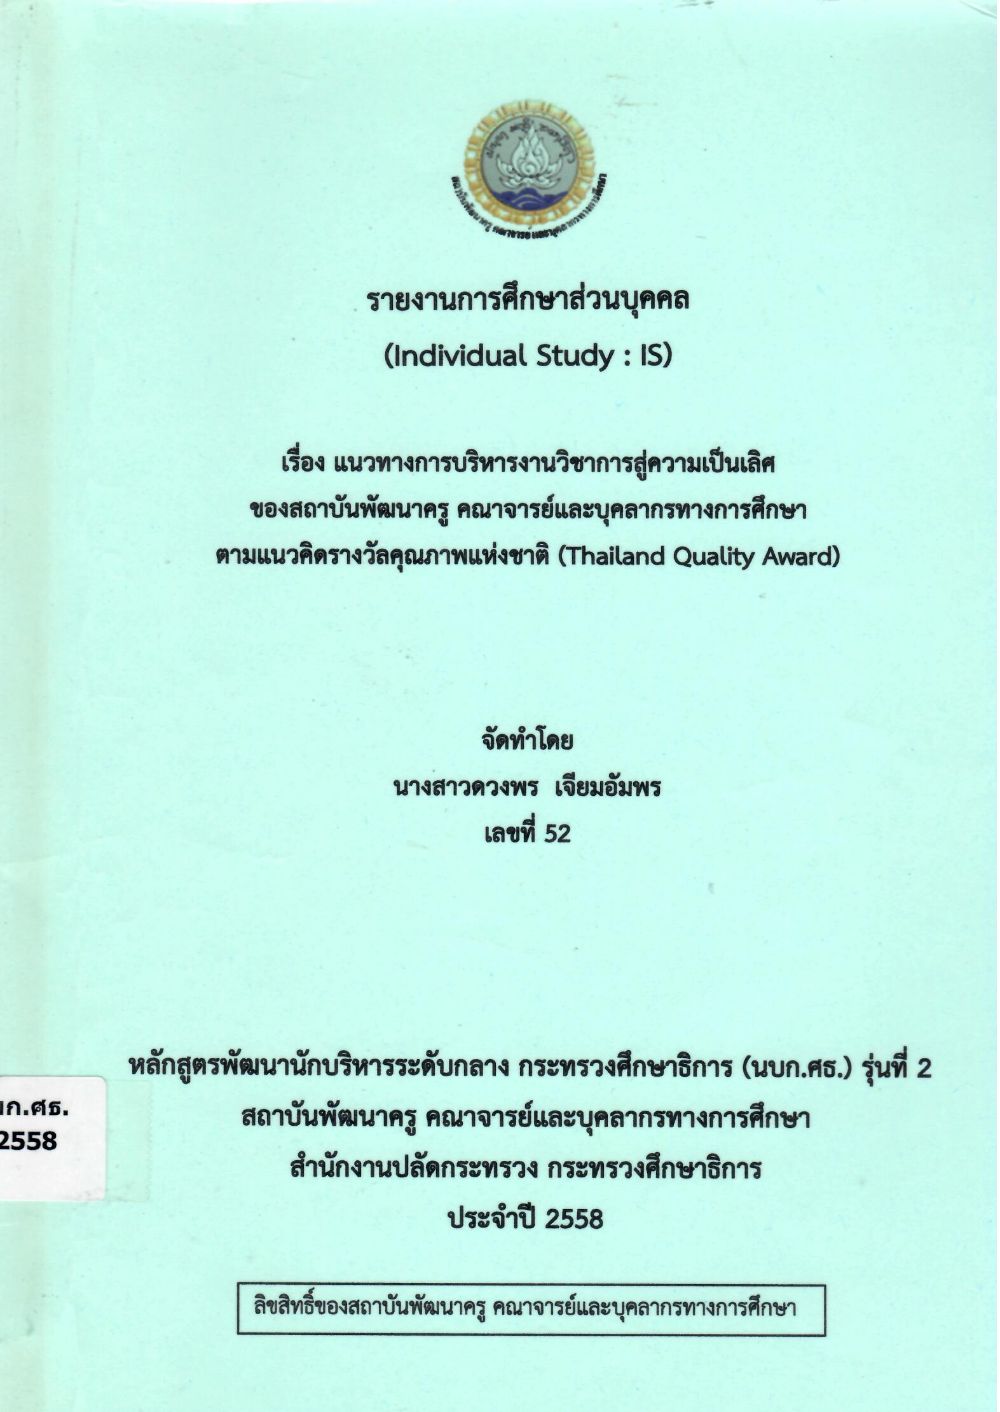 แนวทางการบริหารงานวิชาการสู่ความเป็นเลิศของสถาบันพัฒนาครู คณาจารย์และบุคลากรทางการศึกษา ตามแนวคิดรางวัลคุณภาพแห่งชาติ (Thailand Quality Award) : รายงานการศึกษาส่วนบุคคล (Individual Study)/ ดวงพร เจียมอัมพร